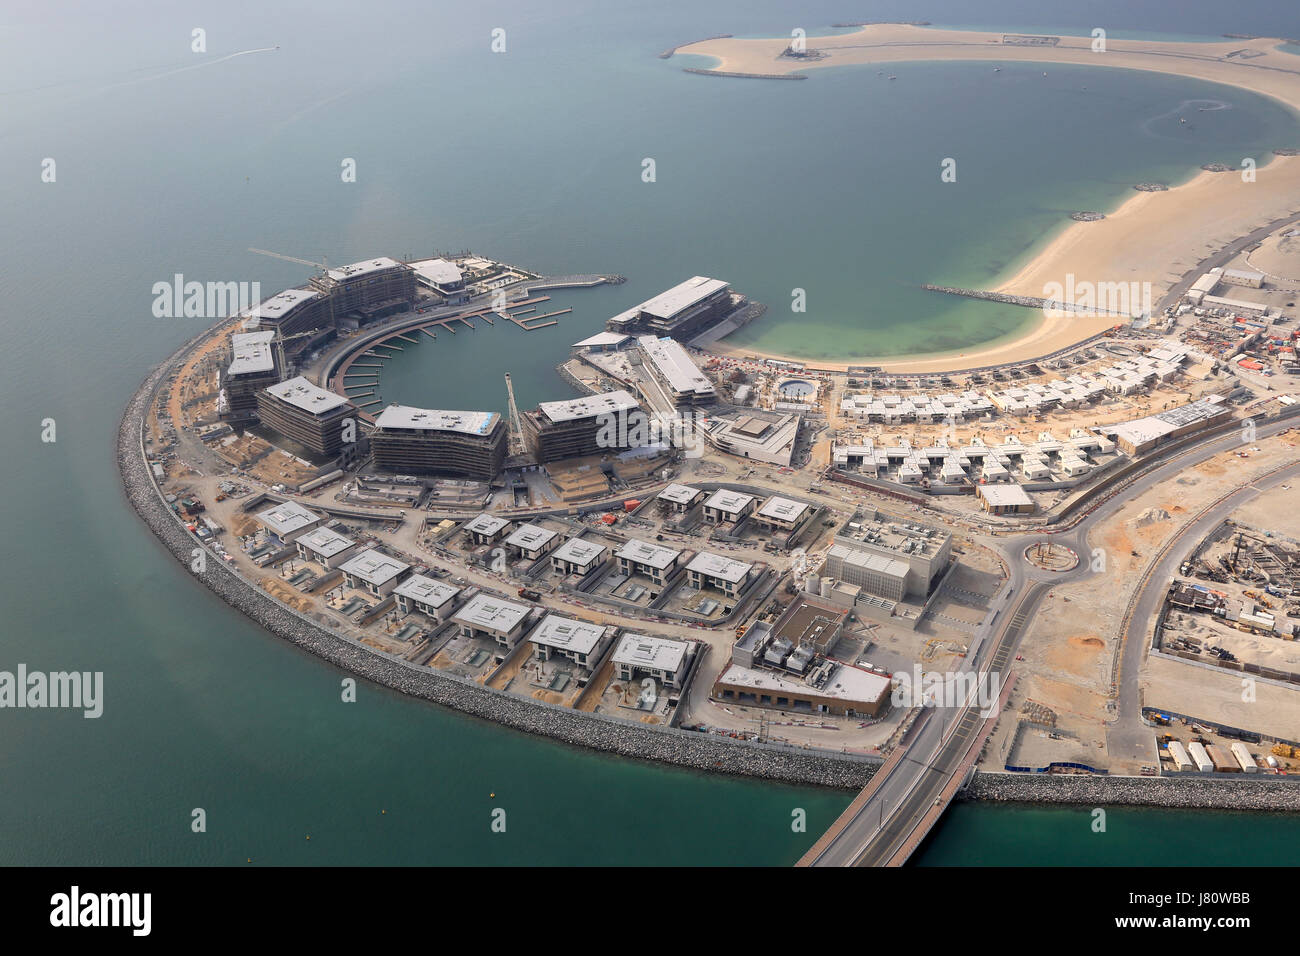 Dubai-Daria-Insel Luftbild Fotografie Vereinigte Arabische Emirate  Stockfotografie - Alamy